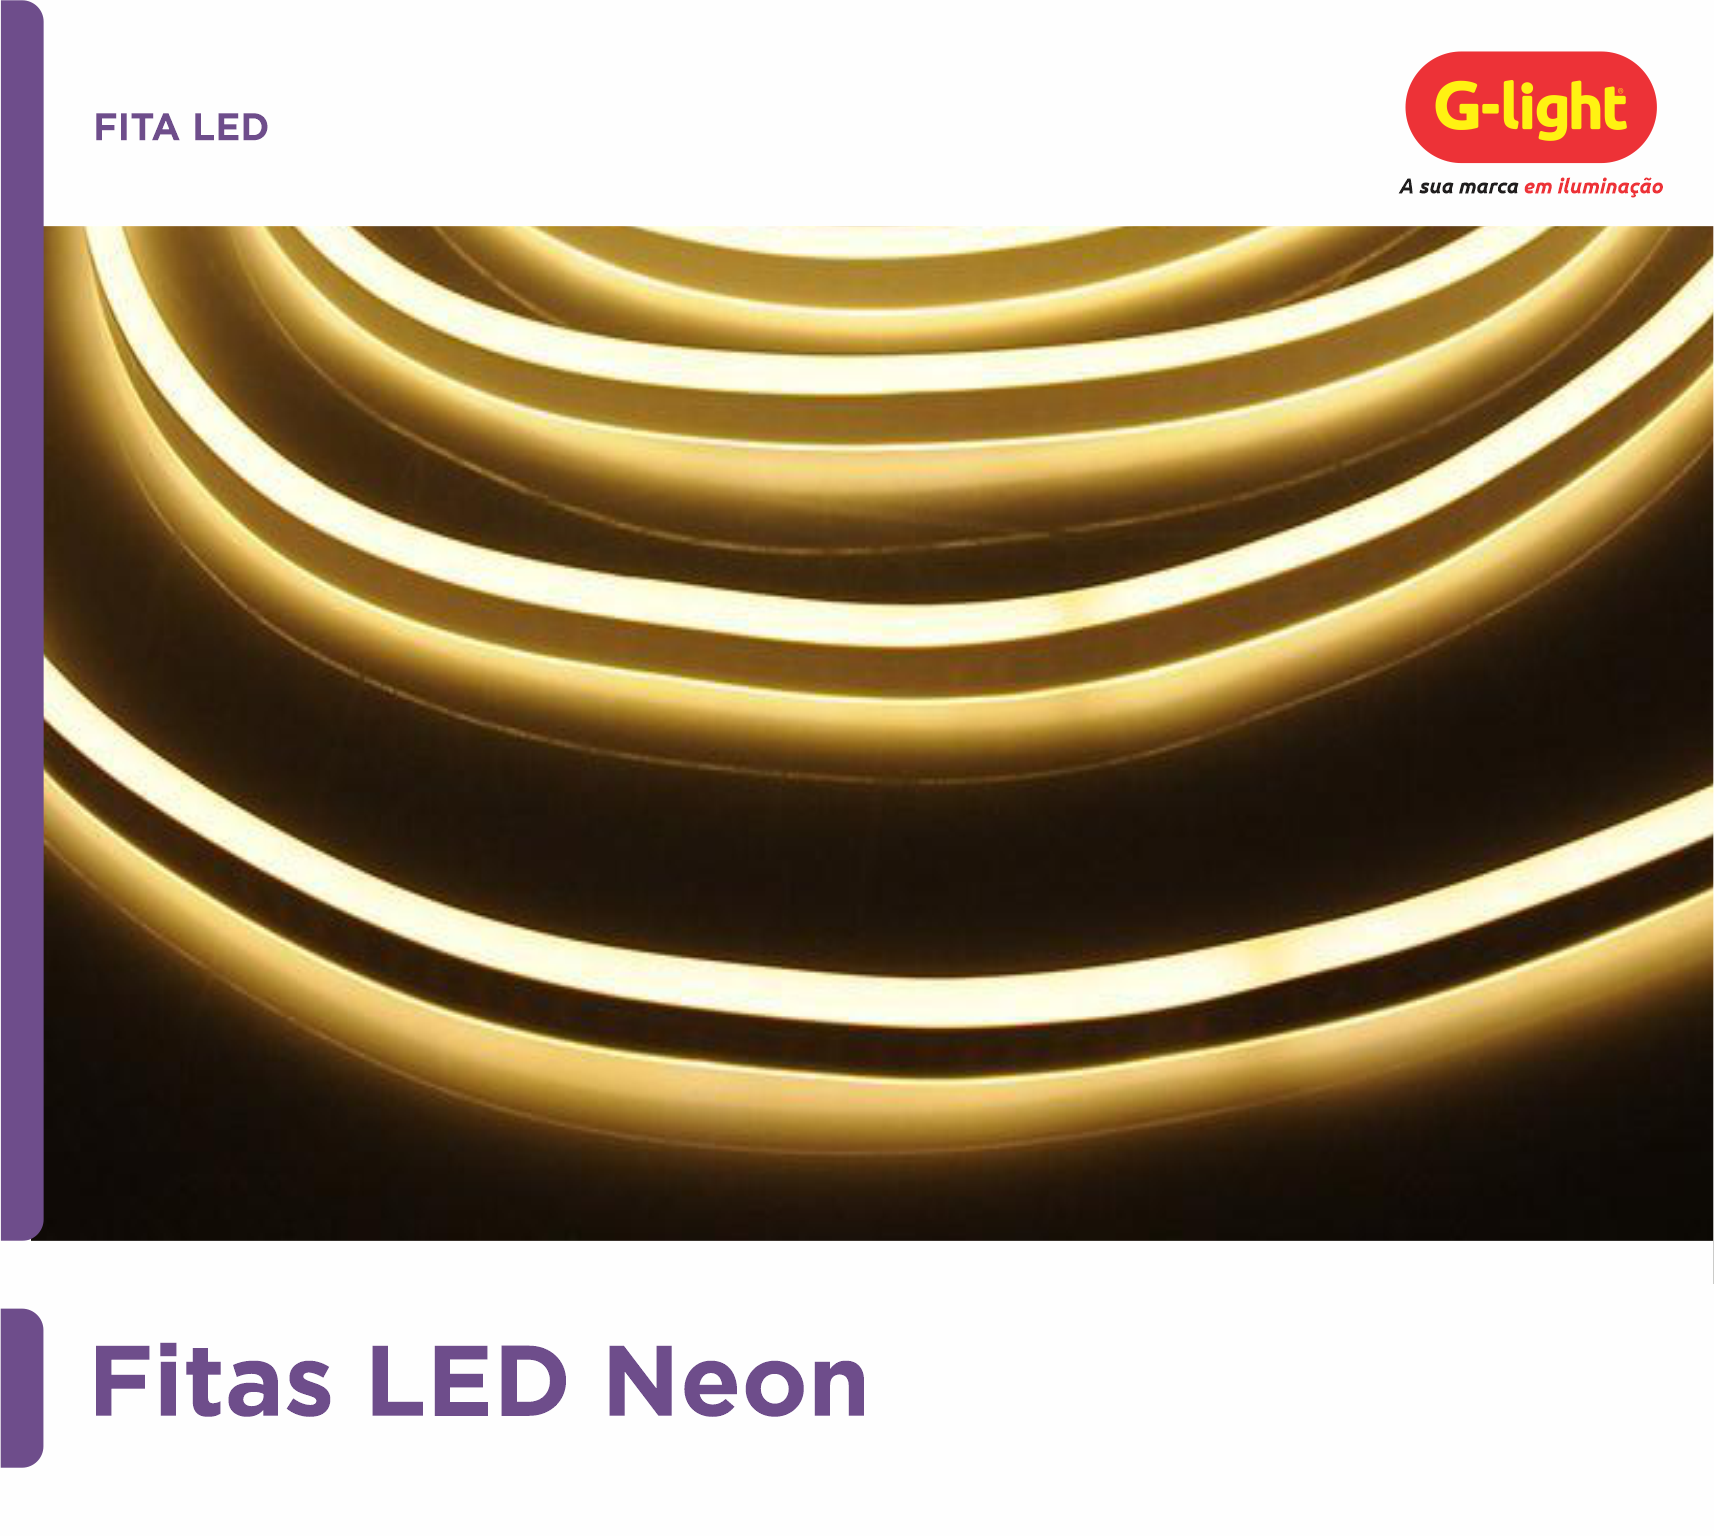 G-light - Lâmpadas, Luminárias e Acessórios de Alto Rendimento e Iluminação  por LED.